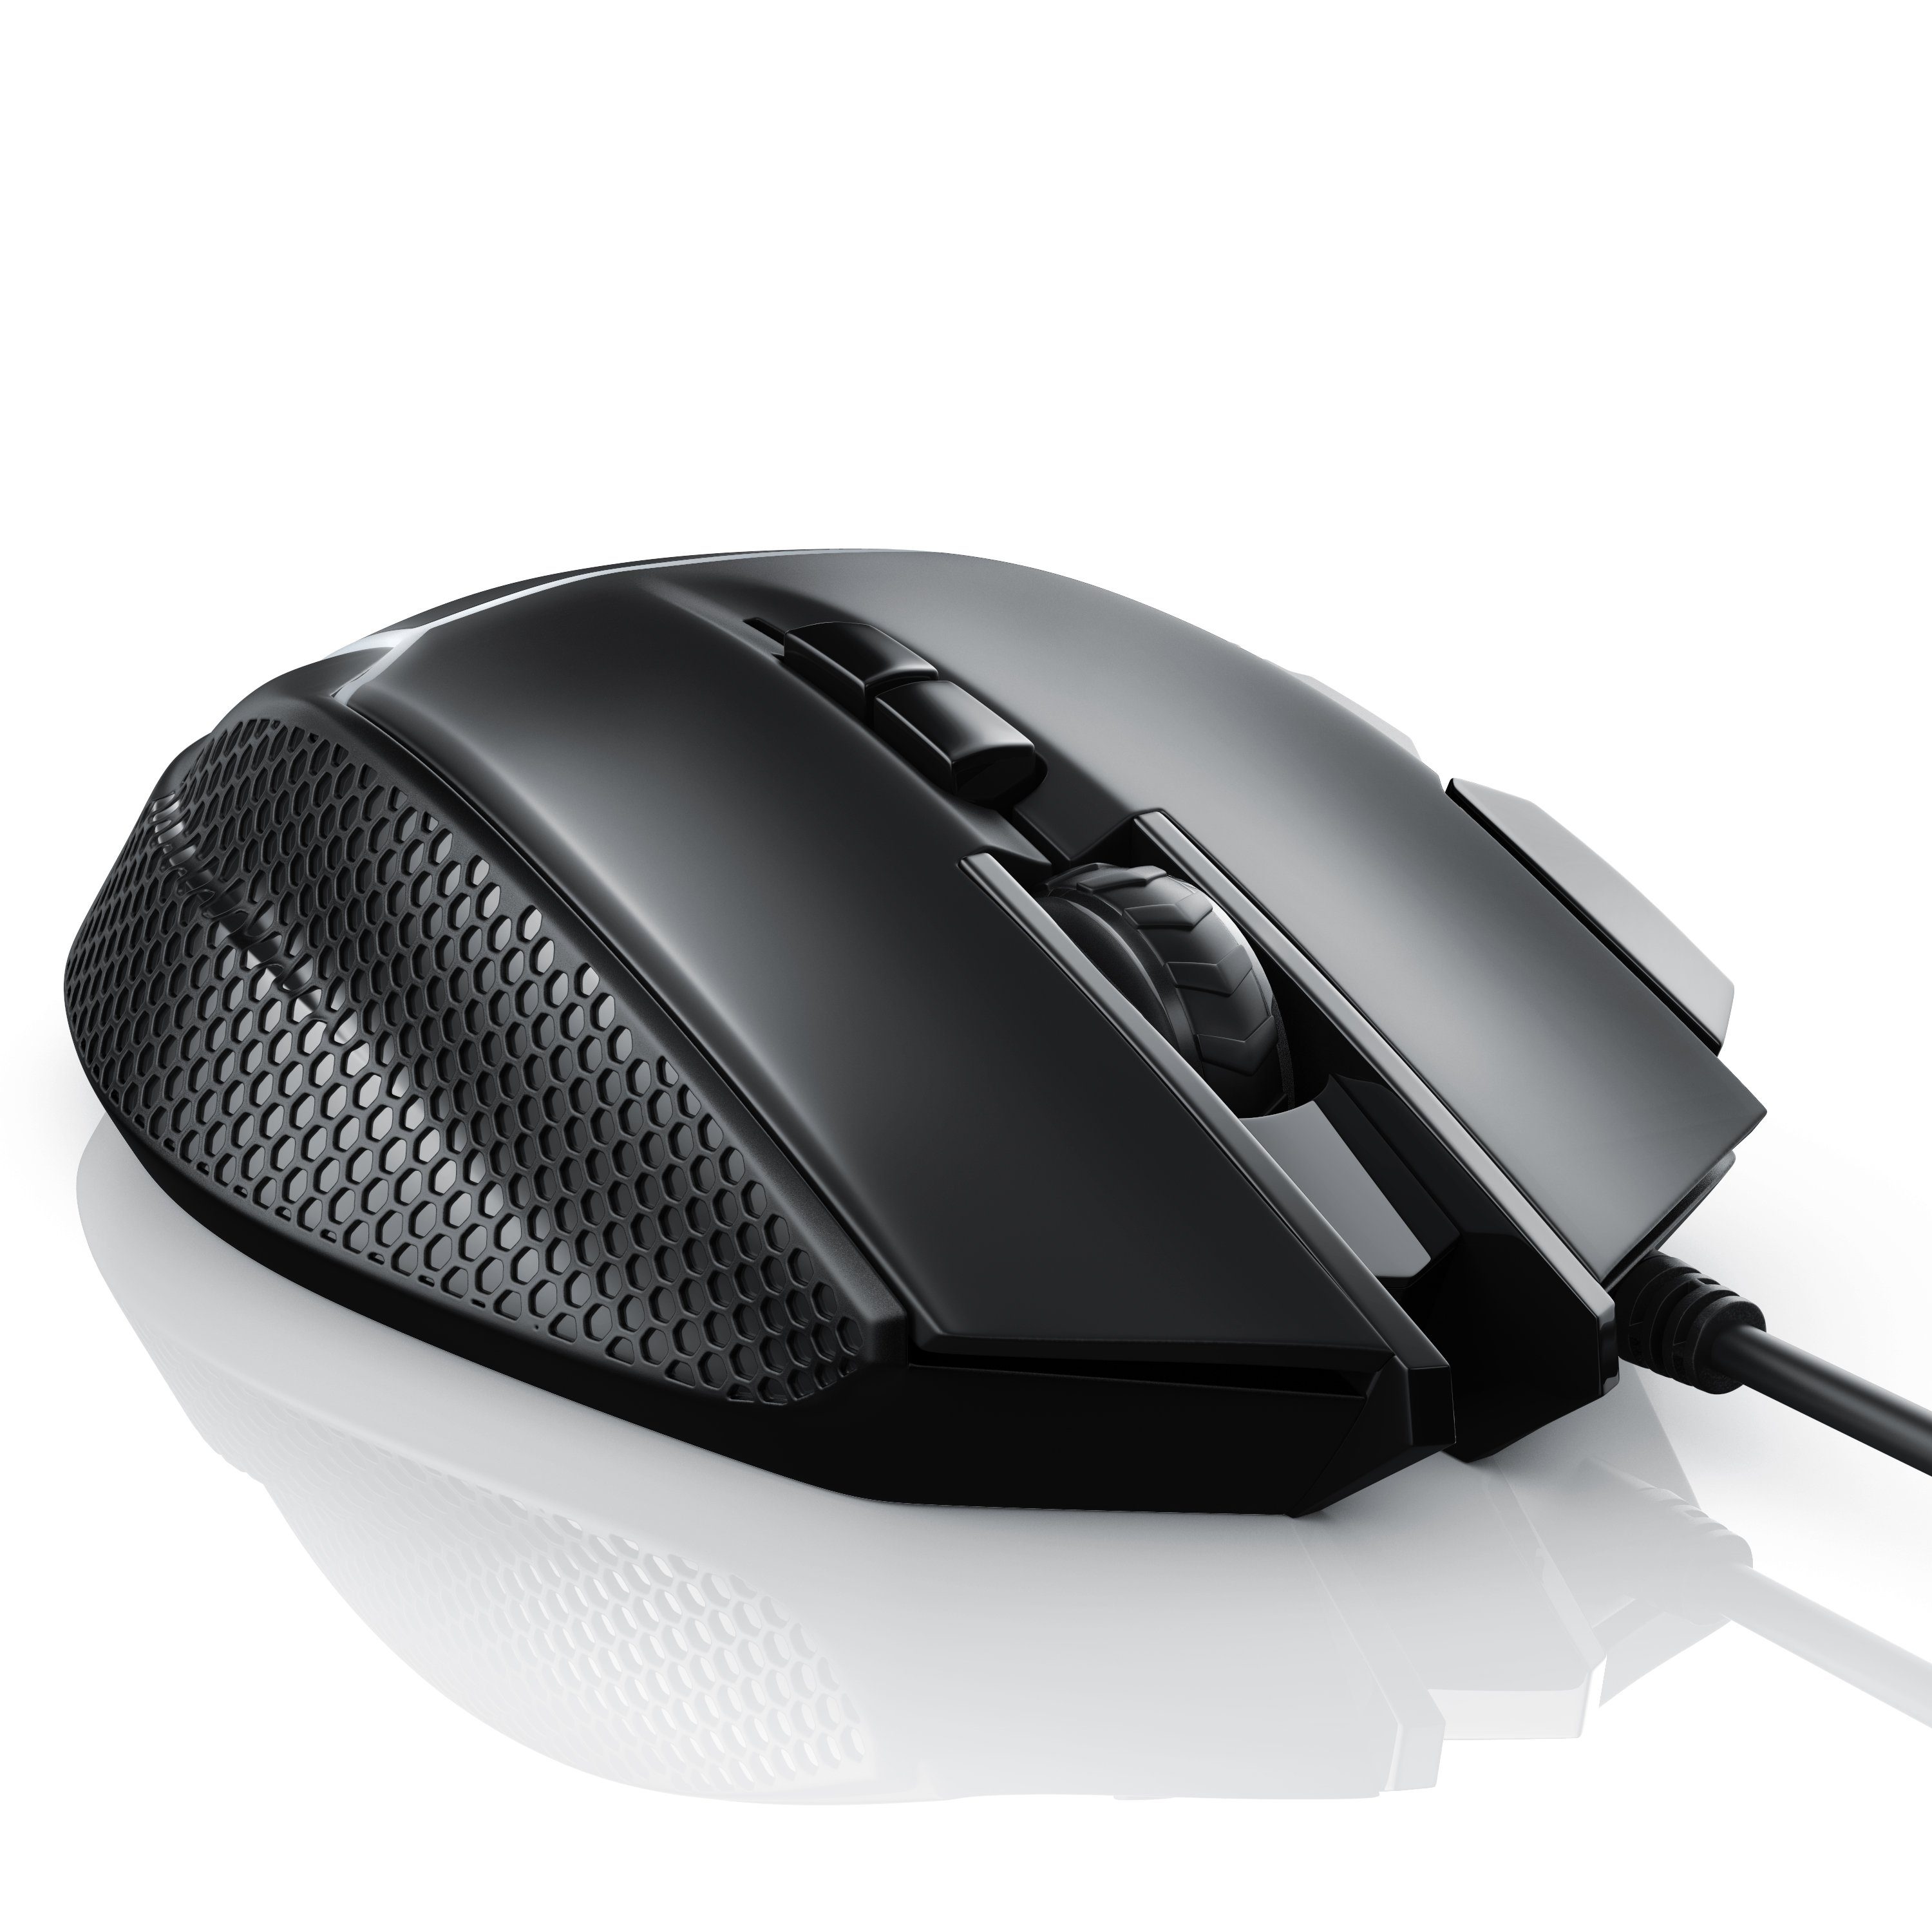 CSL Gaming-Maus (kabelgebunden, 500 dpi, ergonomisch, Abtastrate dpi, Mouse 3200 Gewichten) wählbar, inkl